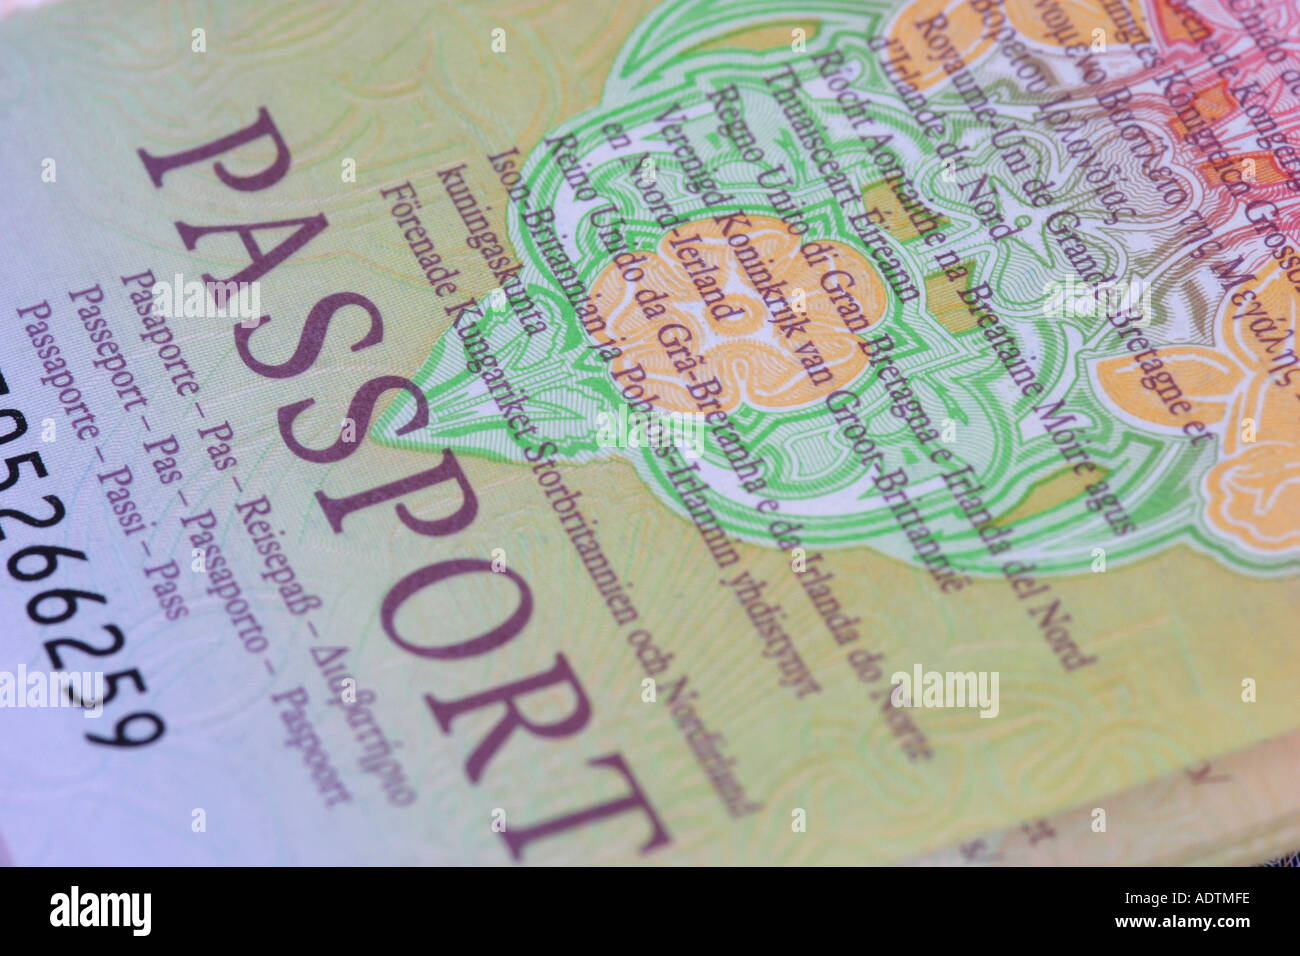 UK Royaume-Uni passeport page intérieure Banque D'Images